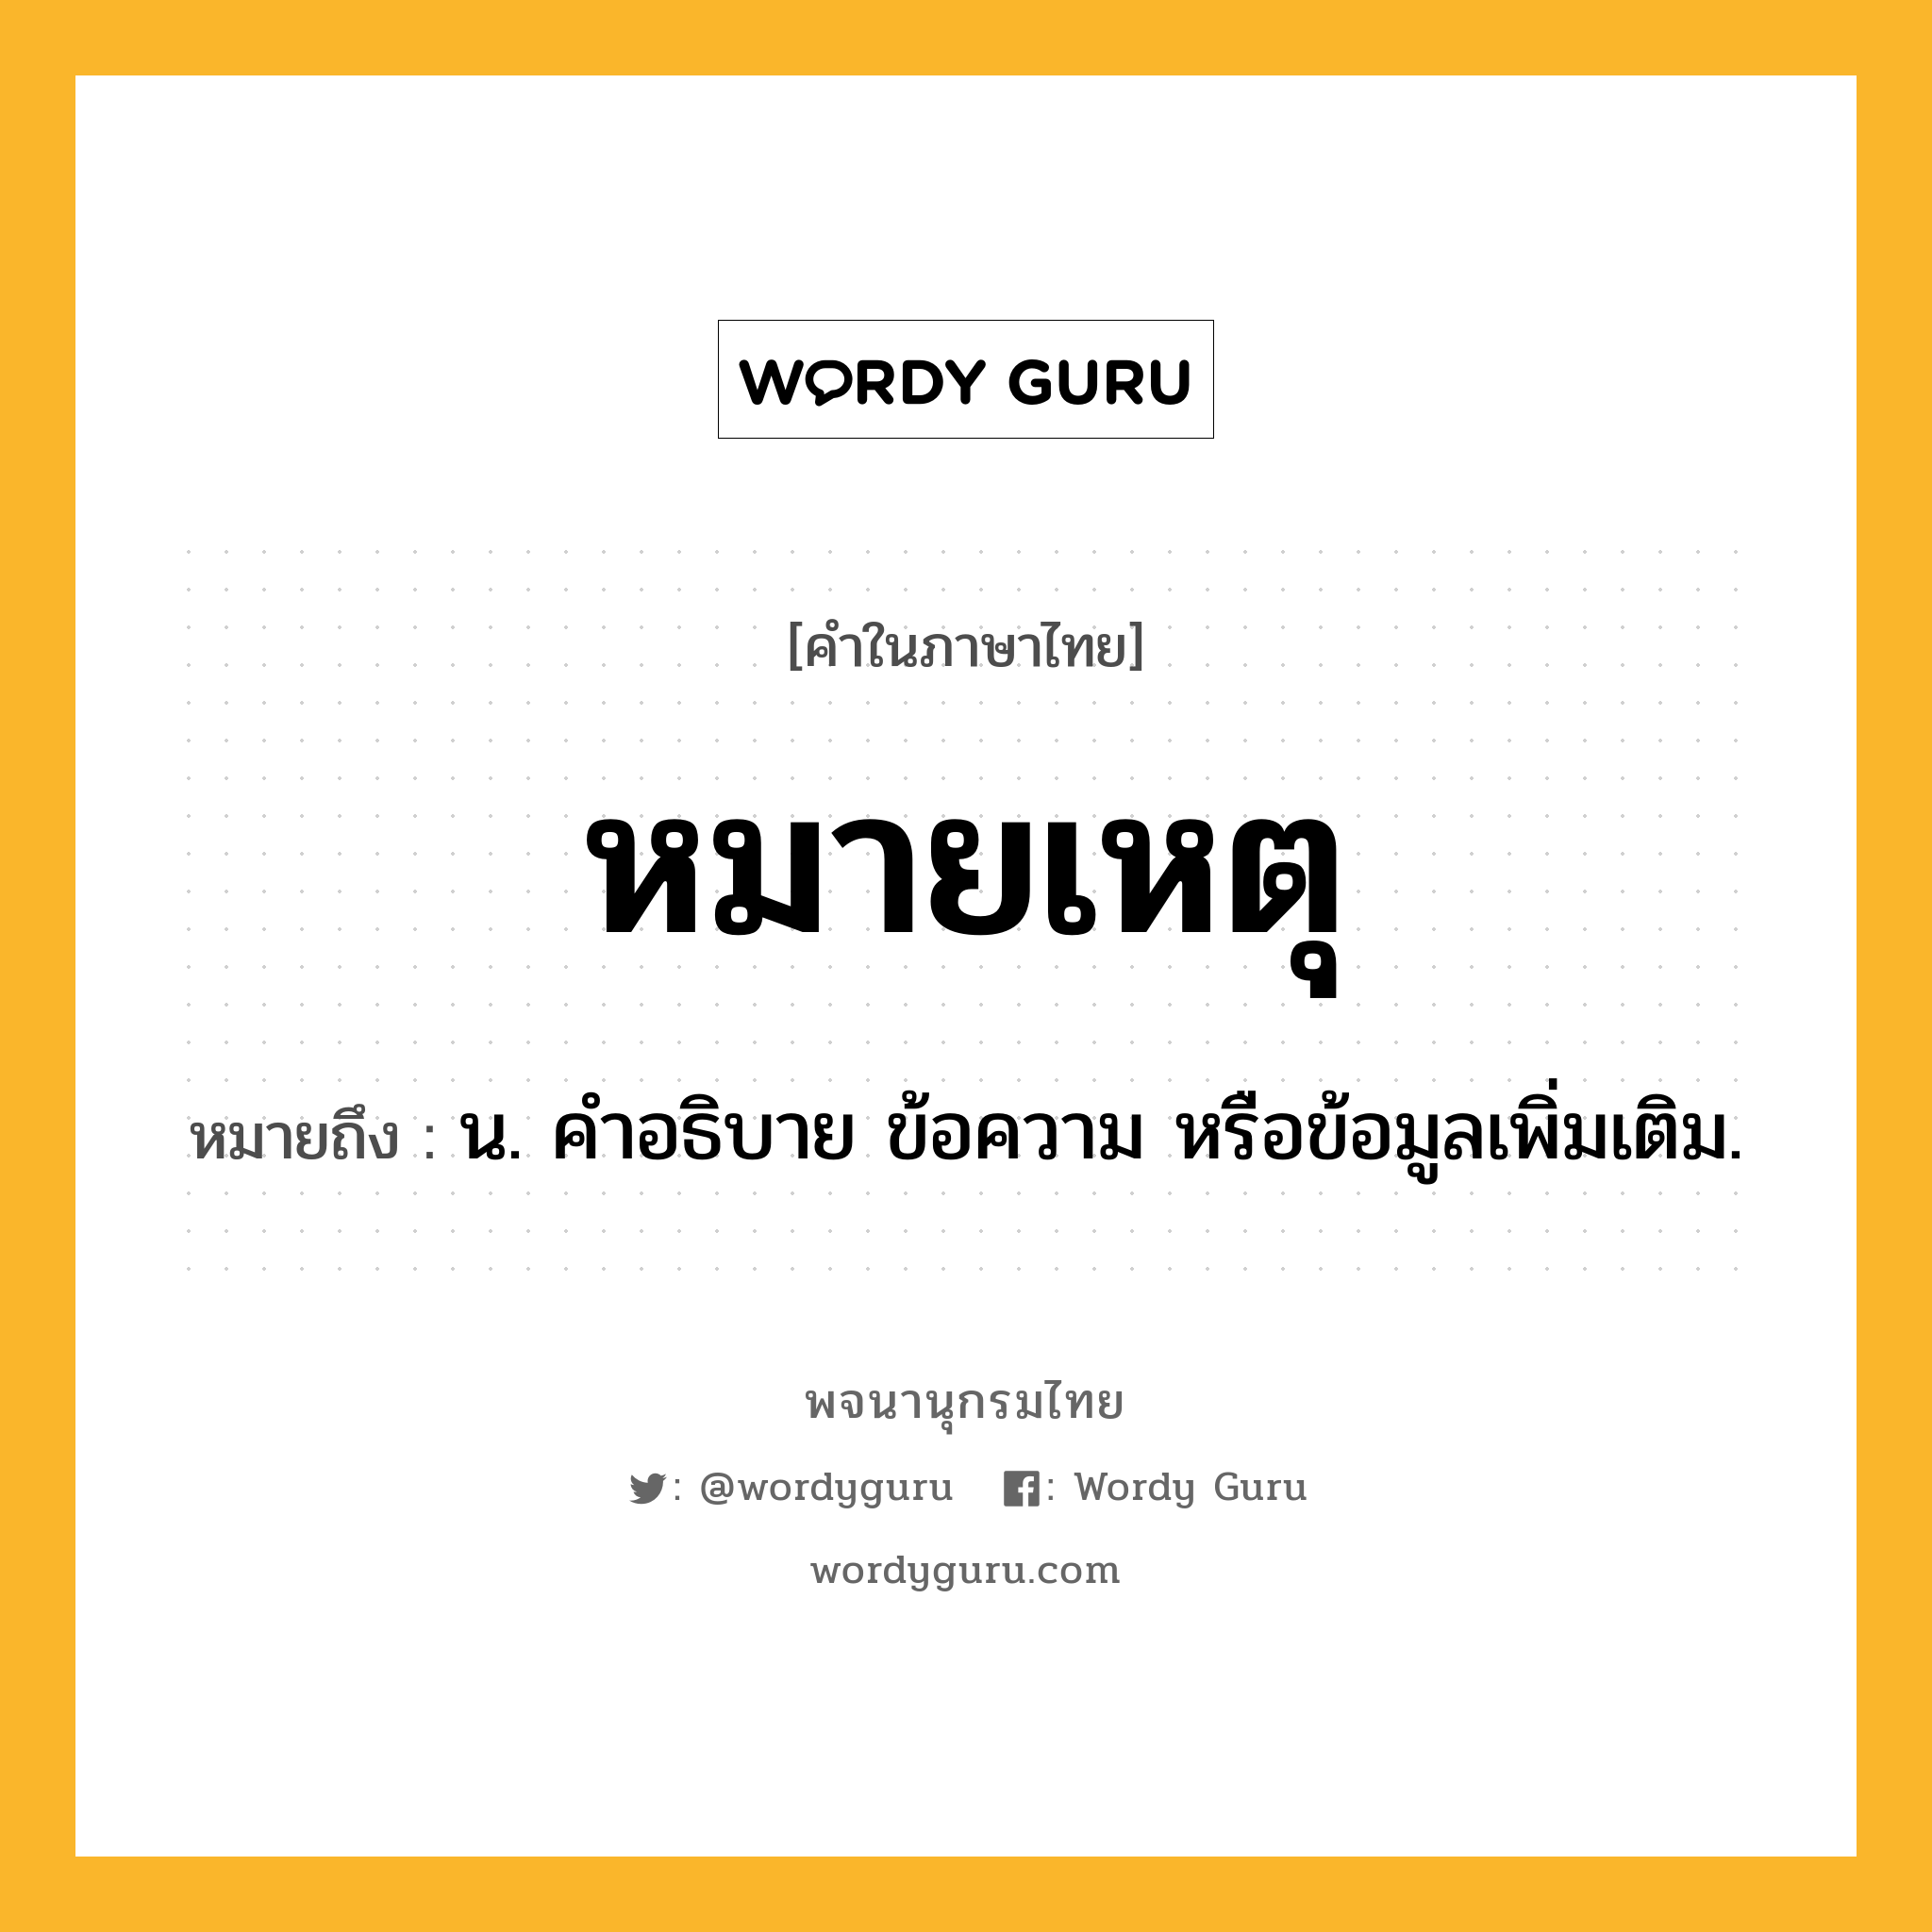 หมายเหตุ หมายถึงอะไร?, คำในภาษาไทย หมายเหตุ หมายถึง น. คำอธิบาย ข้อความ หรือข้อมูลเพิ่มเติม.